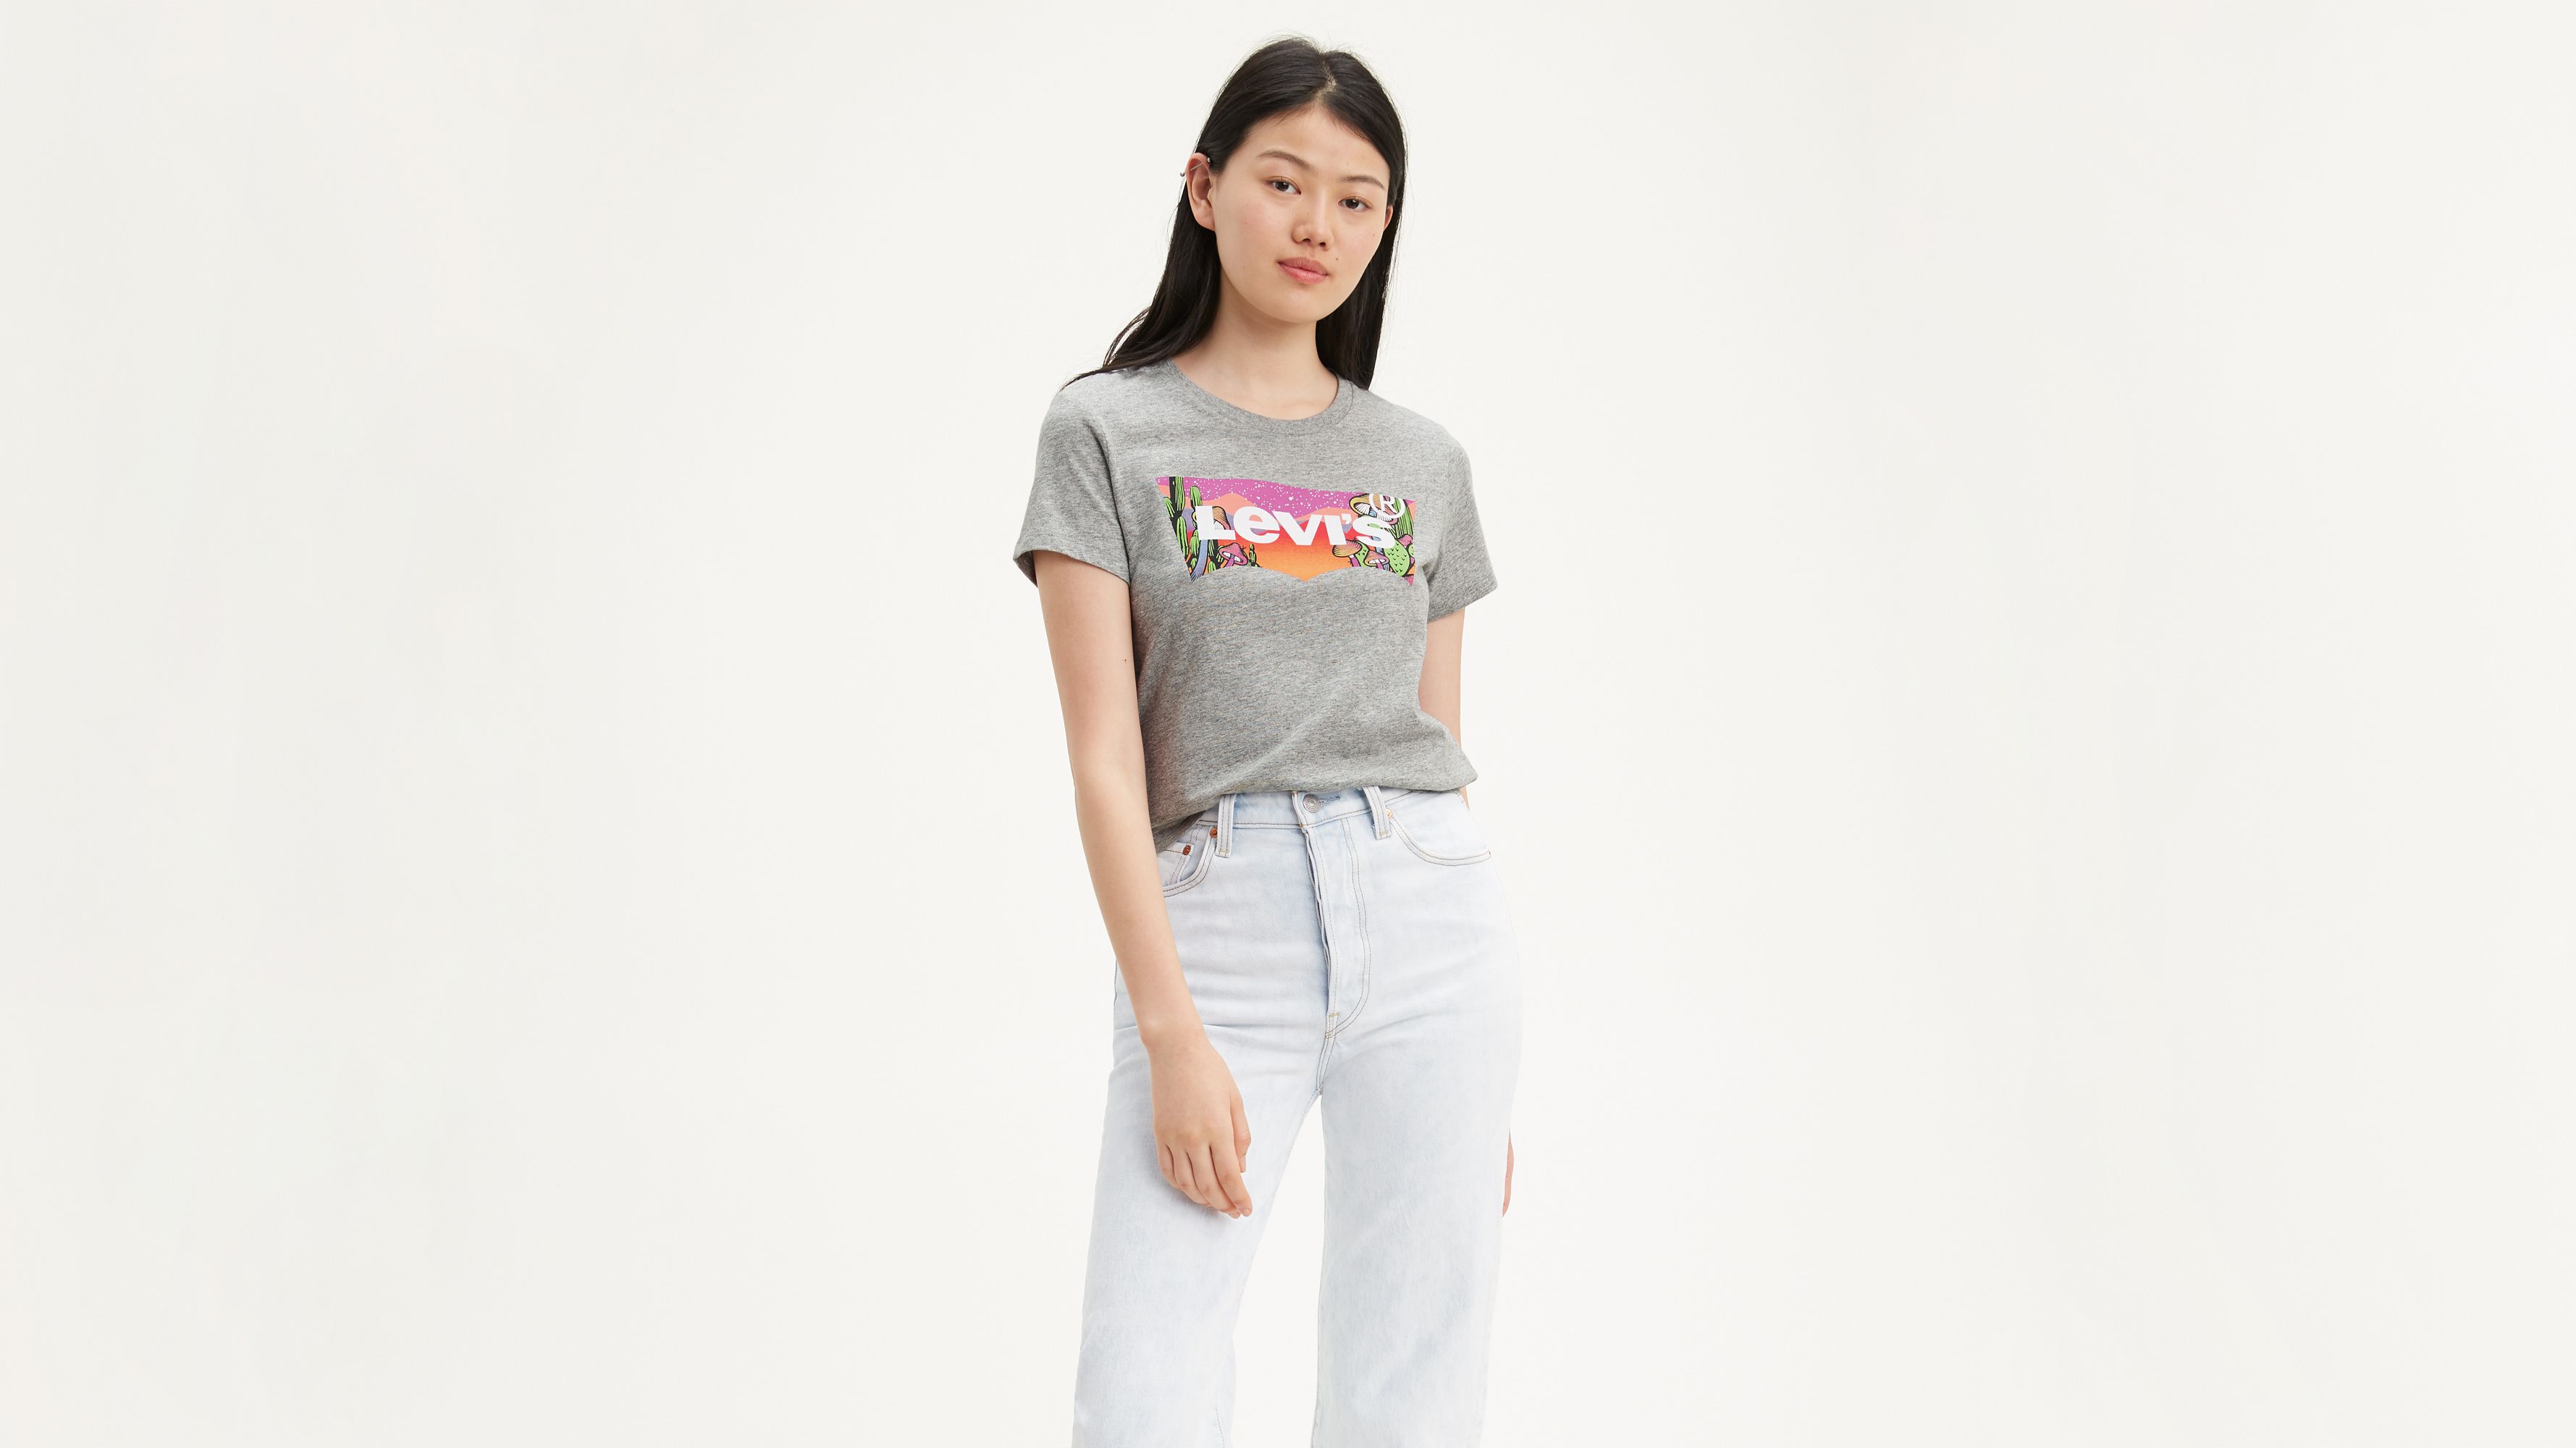 levis t shirt women's sale